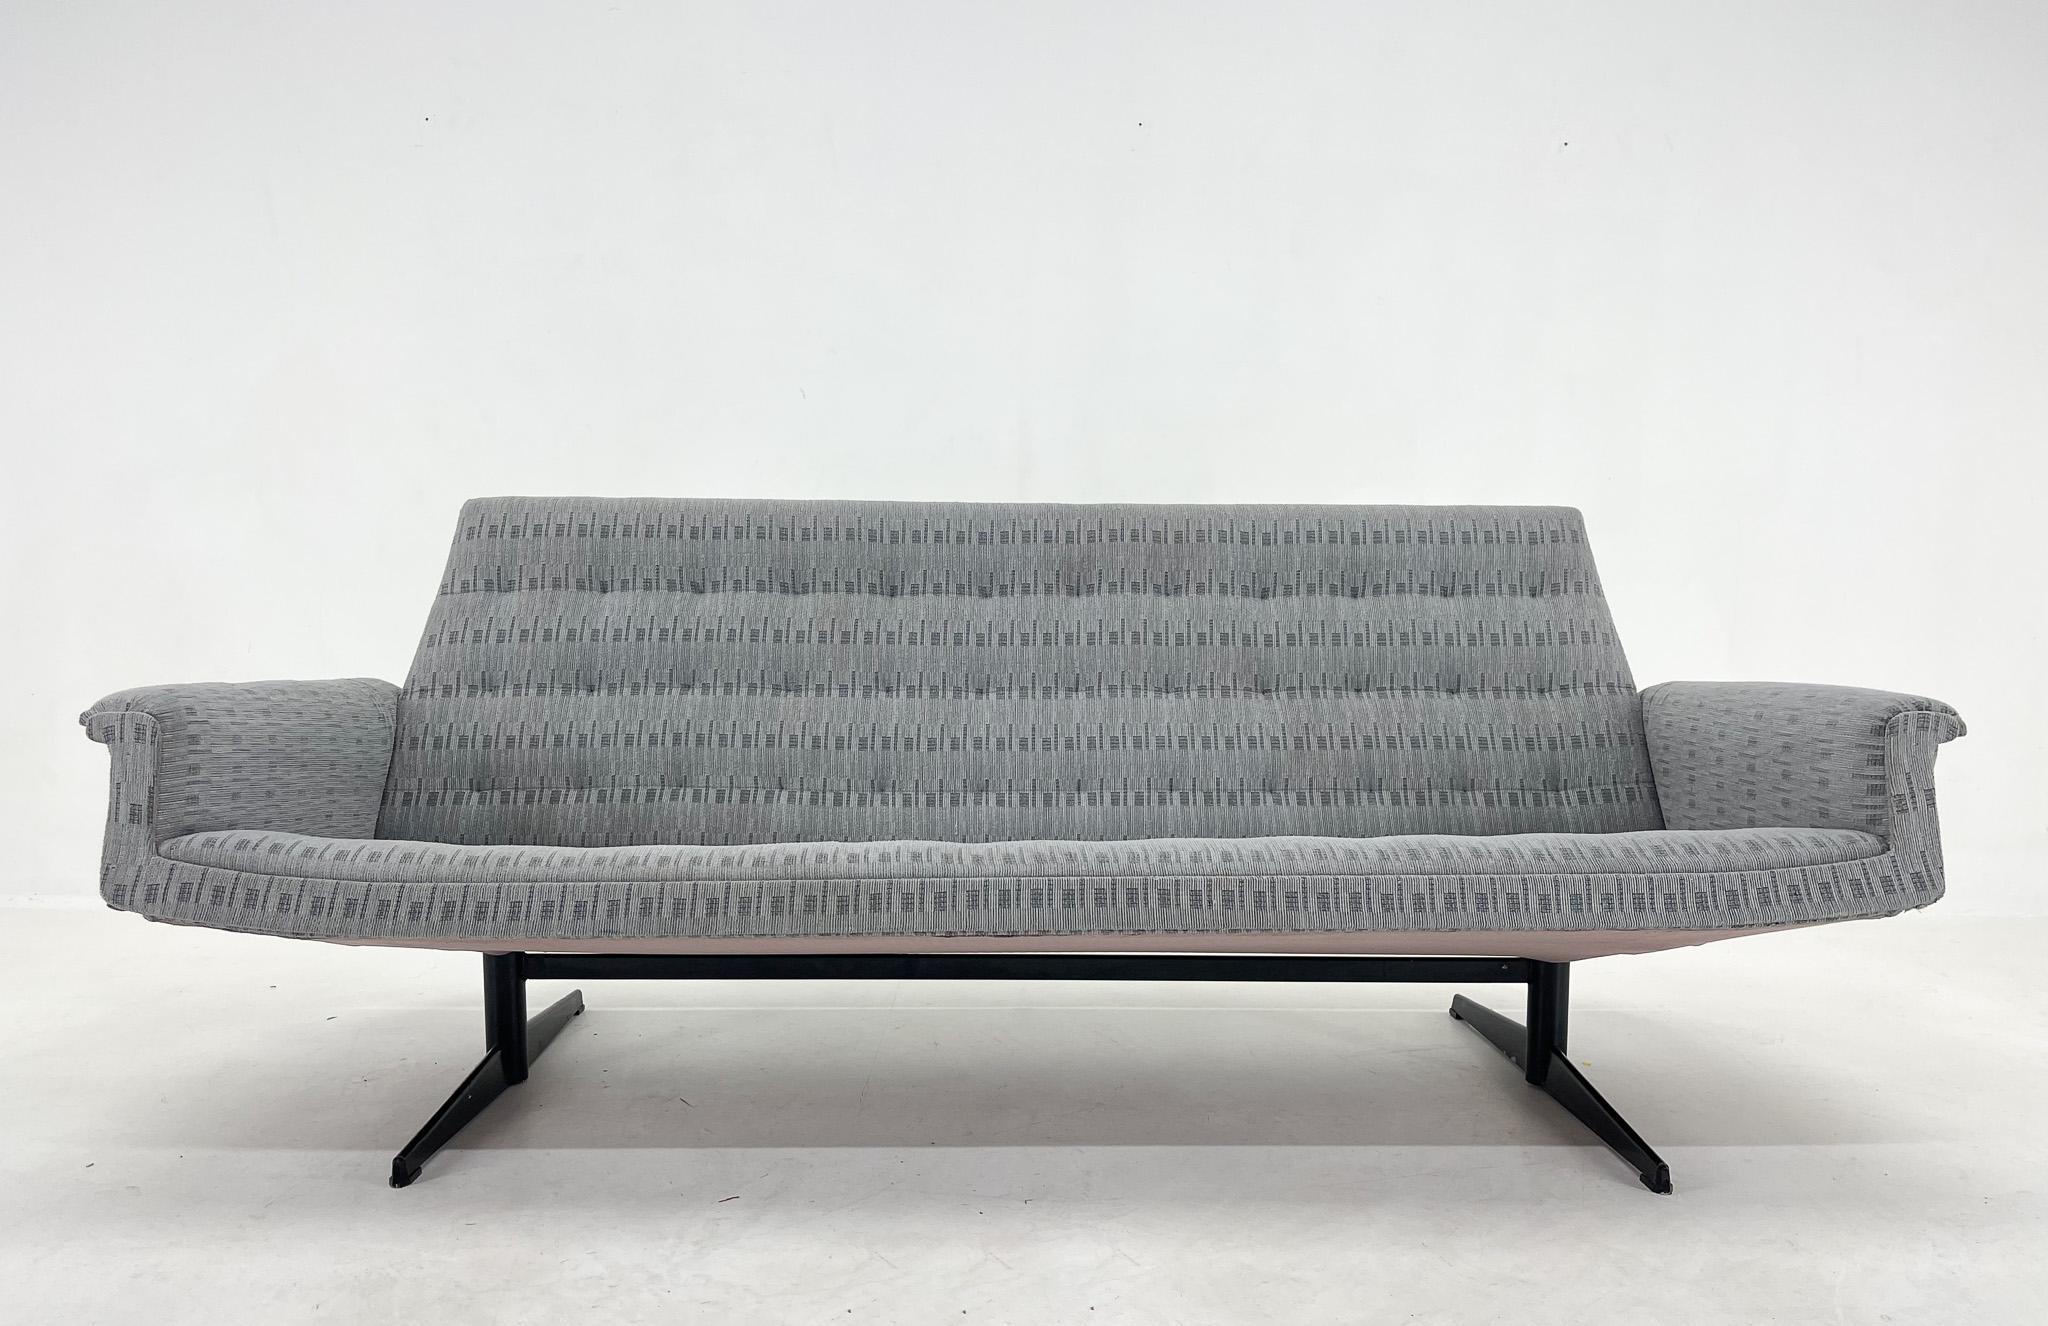 Tschechoslowakisches 3-Sitzer-Sofa aus den 1960er Jahren in Originalpolsterung. Der Sitz ist 36 cm hoch. Guter originaler Vintage-Zustand.